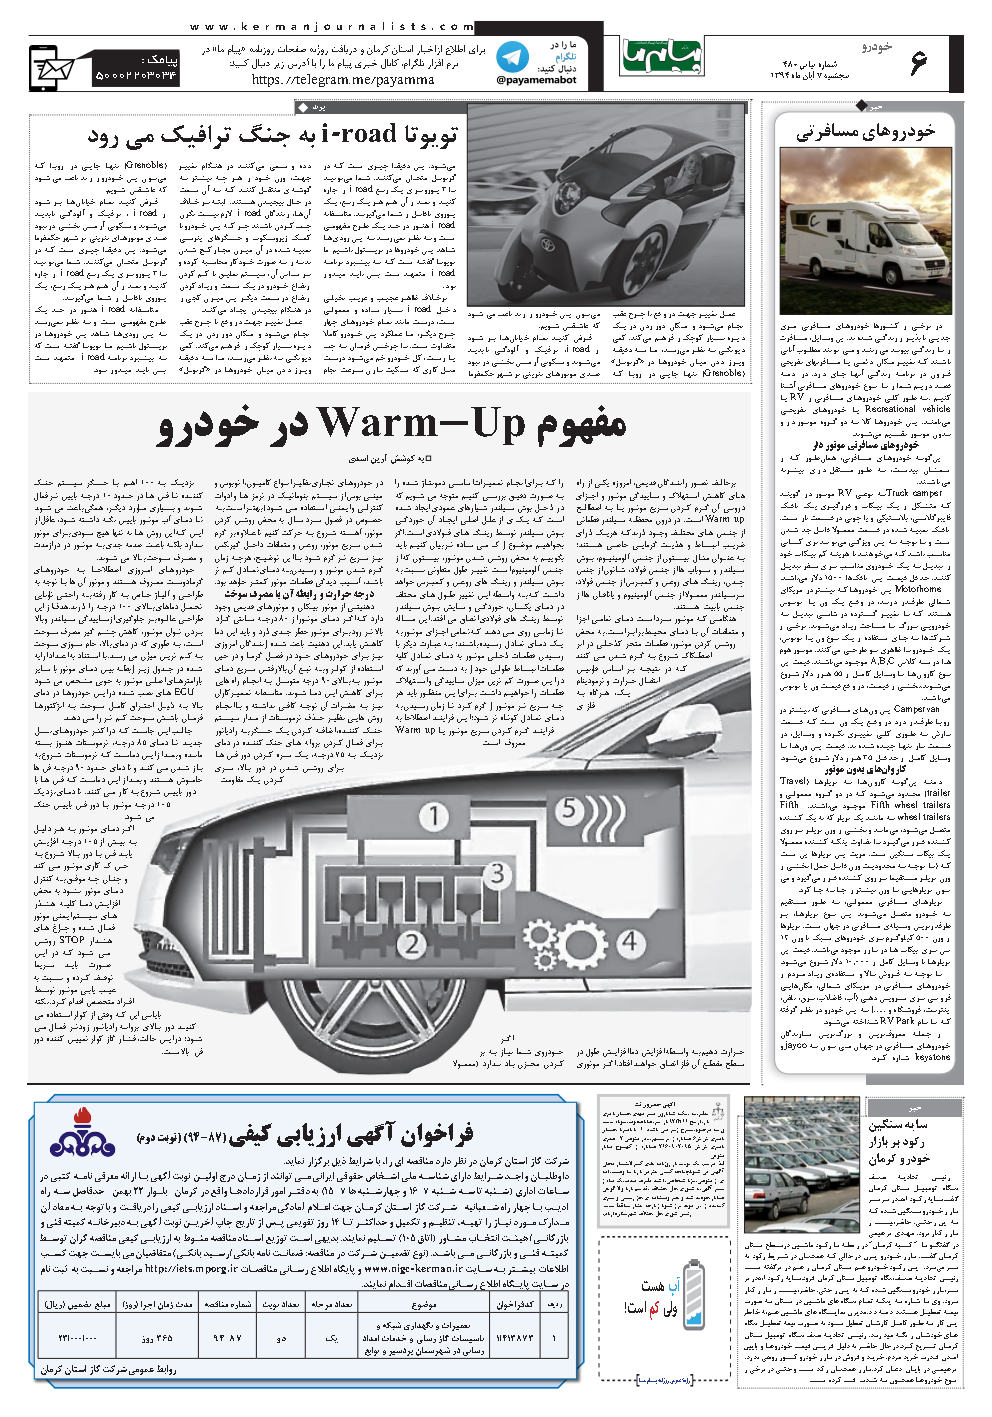 صفحه خودرو شماره شماره ۴۸۰ روزنامه پیام ما